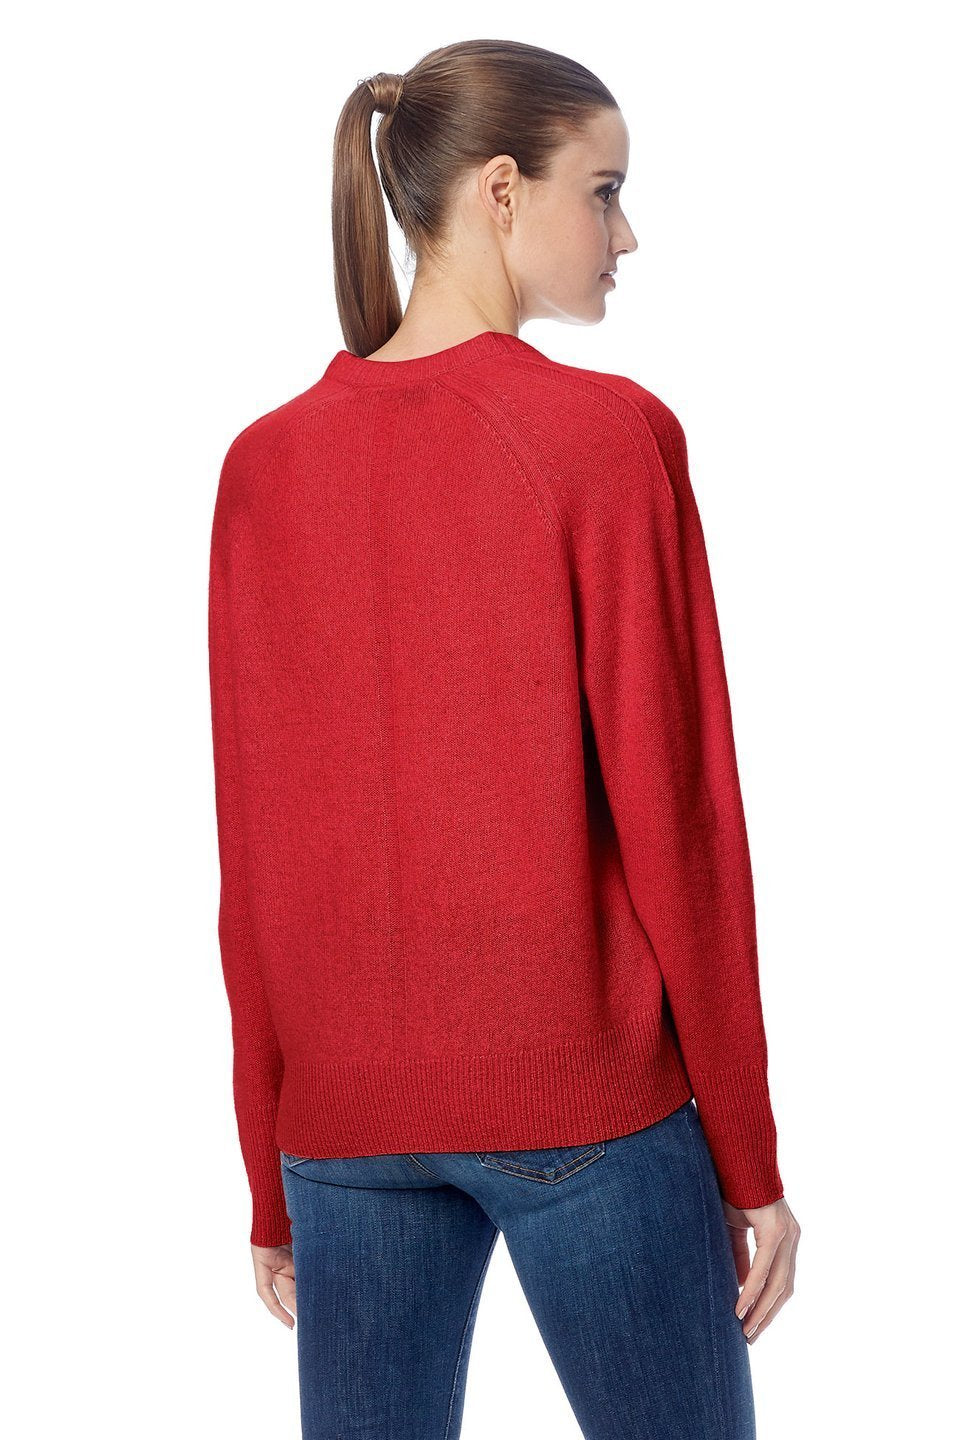 360 Cashmere - Callie Cashmere Sweater in Brick